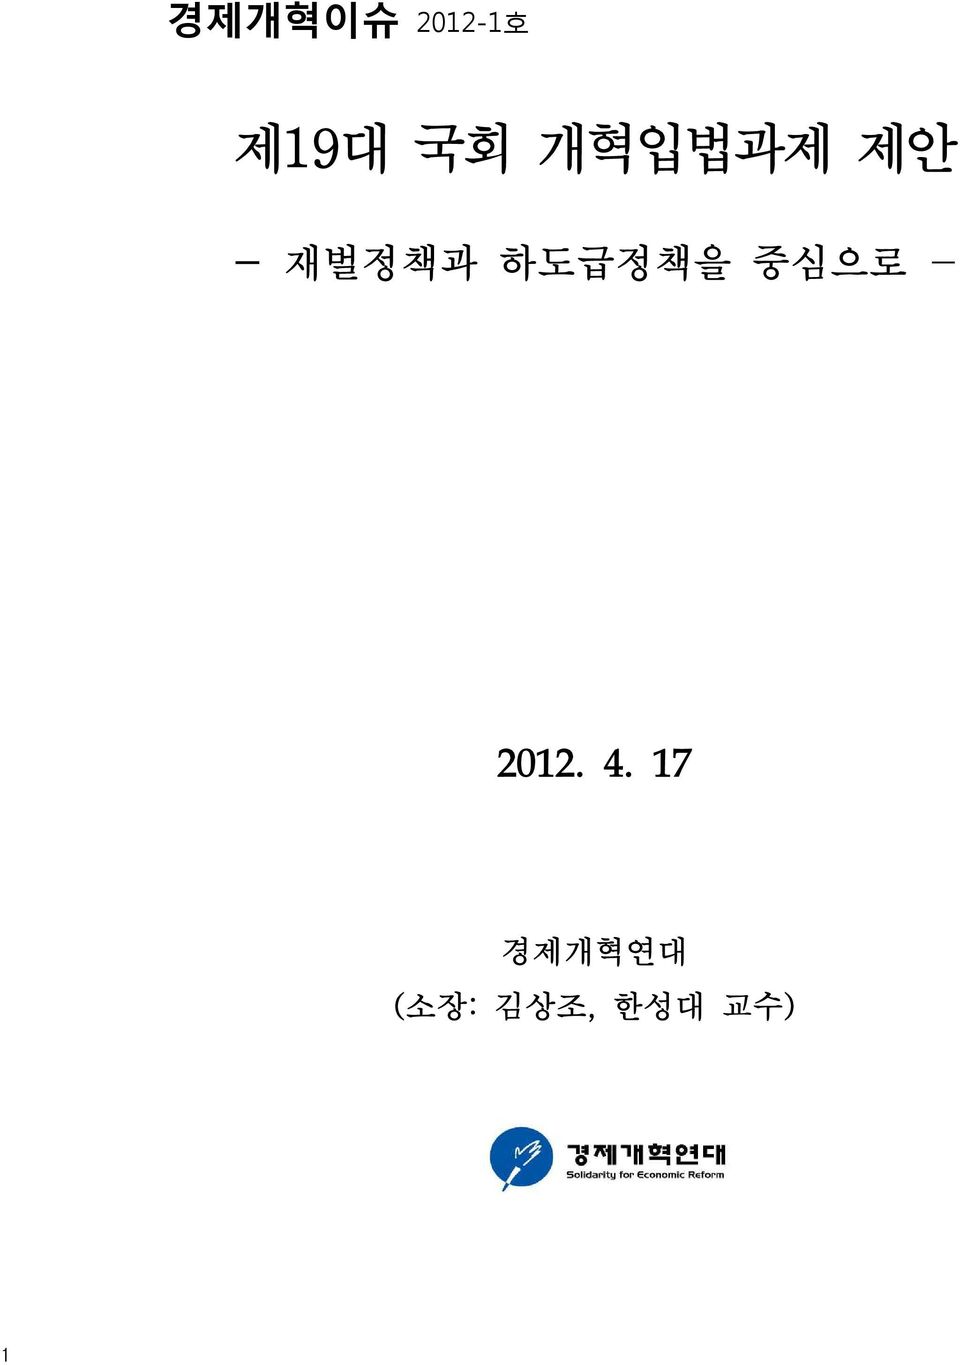 하도급정책을 중심으로 - 2012. 4.